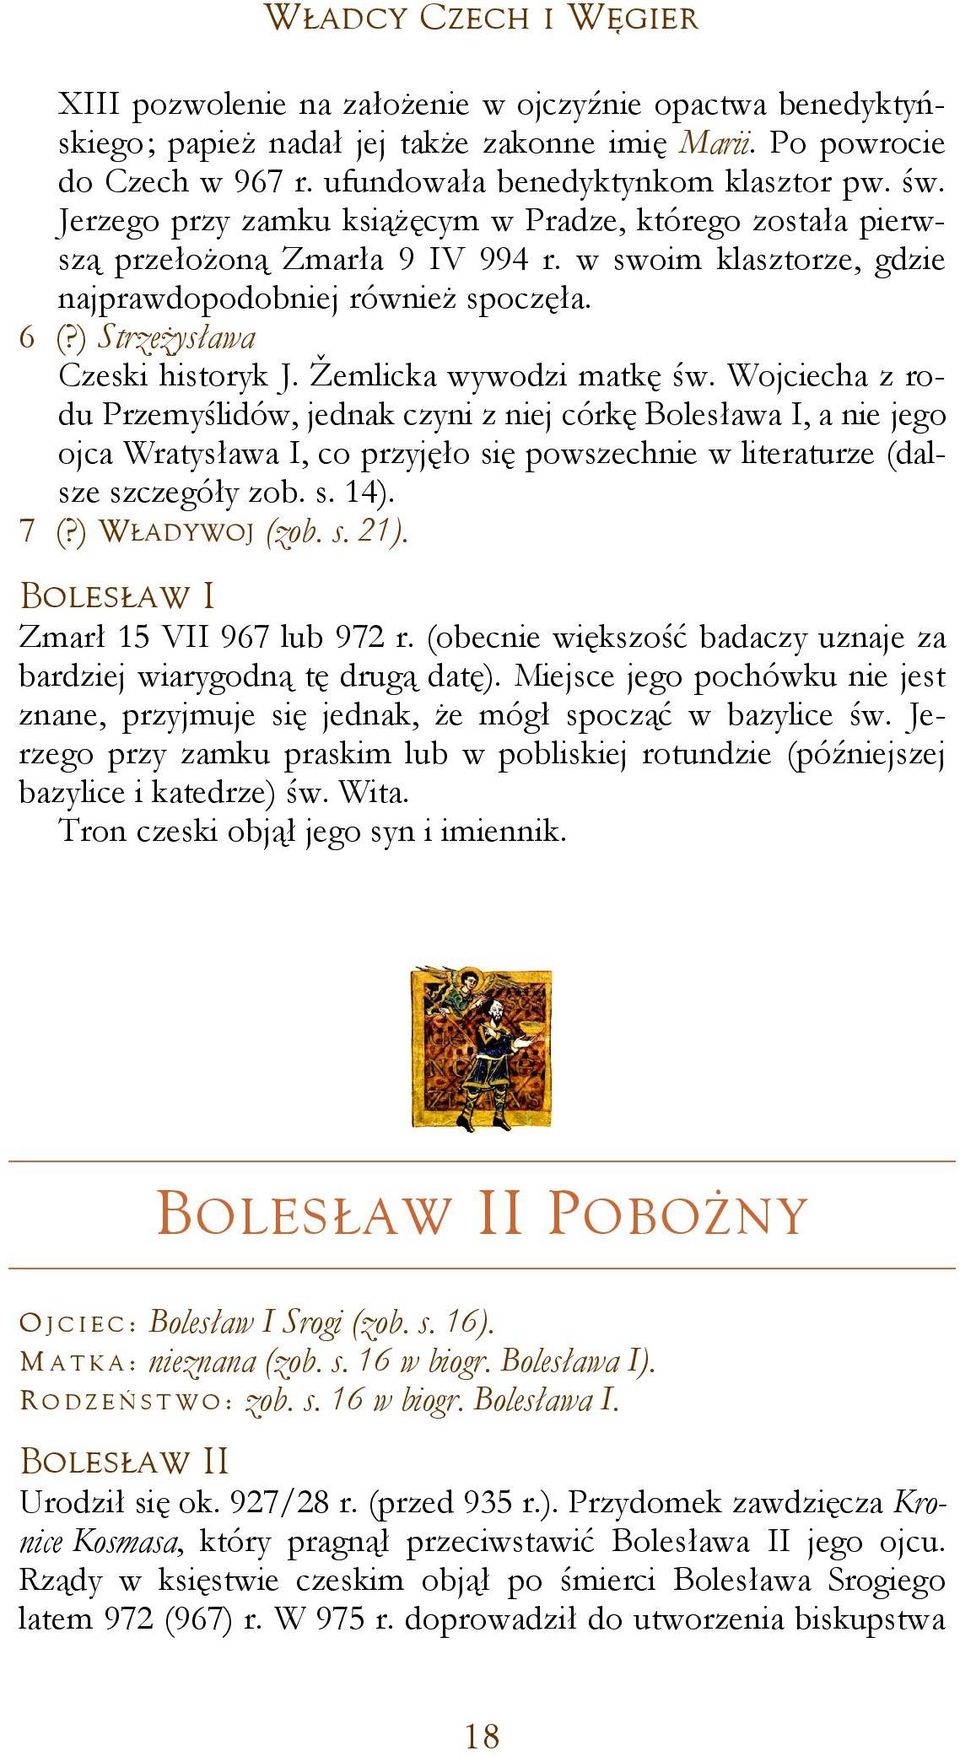 Žemlicka wywodzi matkę św. Wojciecha z rodu Przemyślidów, jednak czyni z niej córkę Bolesława I, a nie jego ojca Wratysława I, co przyjęło się powszechnie w literaturze (dalsze szczegóły zob. s. 14).